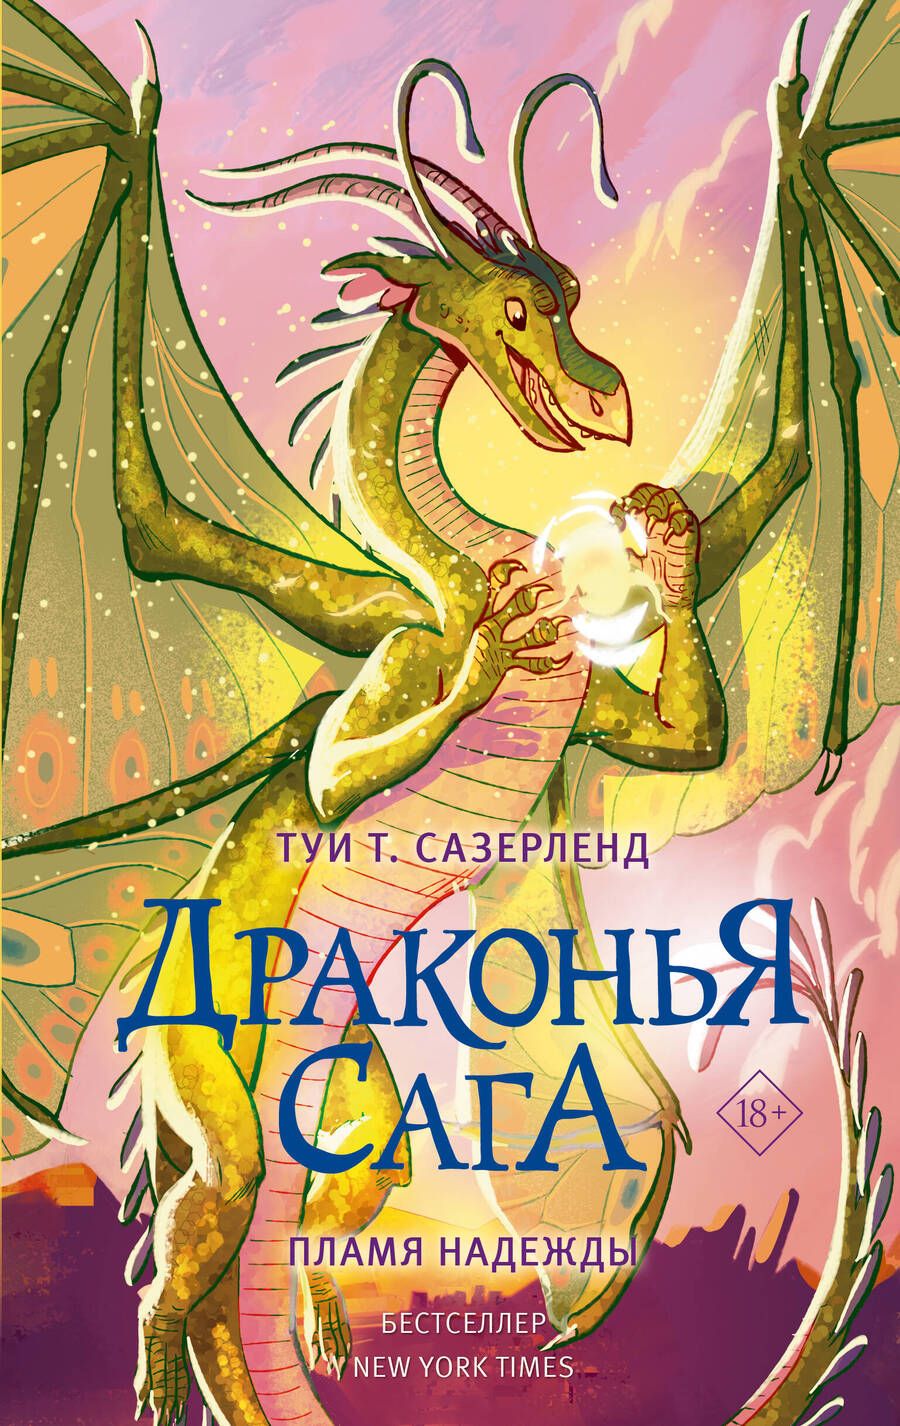 Обложка книги "Сазерленд: Драконья сага. Пламя надежды"